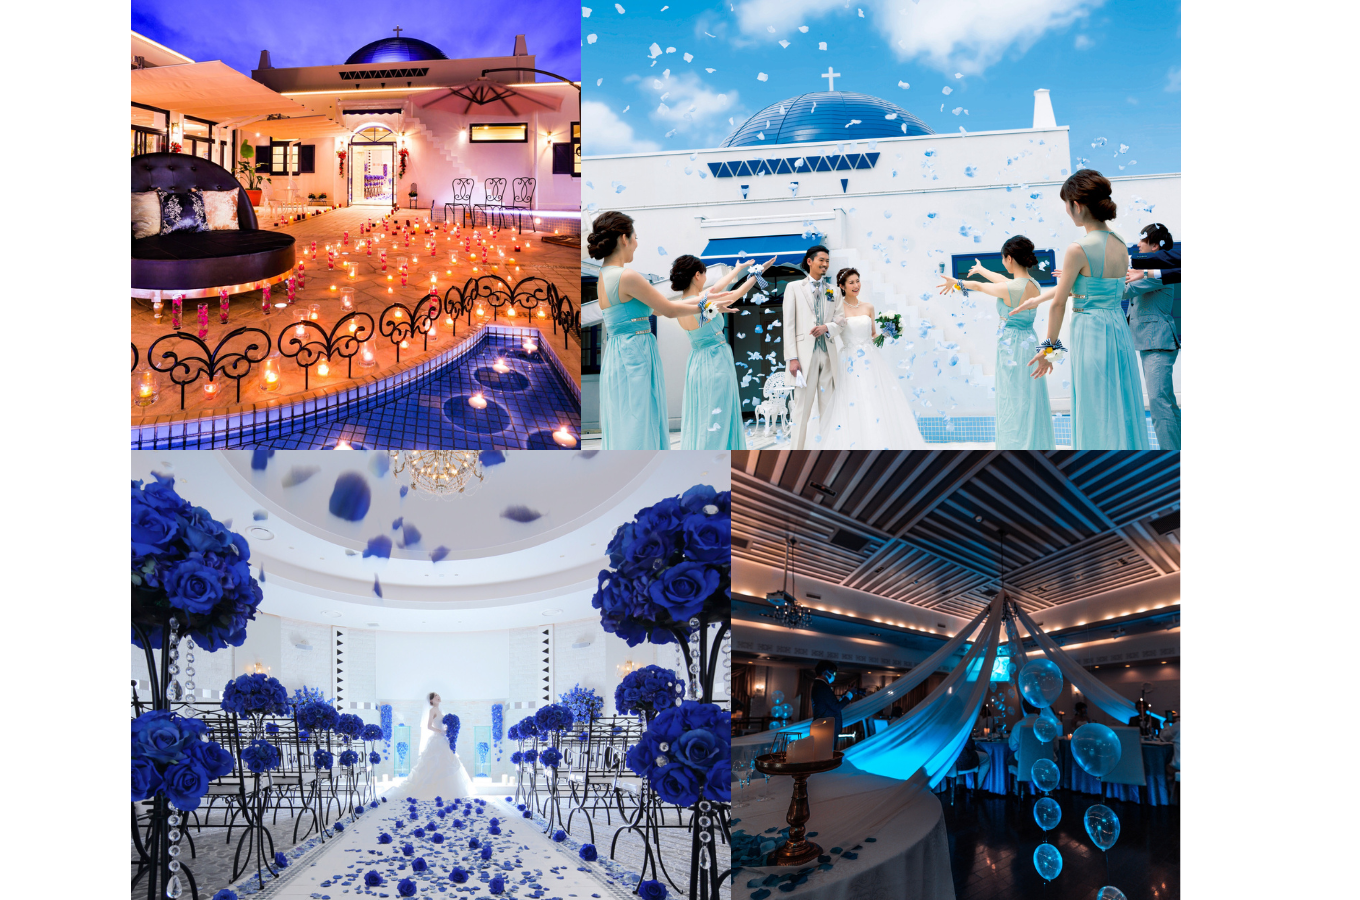 仙台の結婚式場［プライベートリゾートカリメーラ］の外観や披露宴会場と新郎新婦やゲストが写っている写真